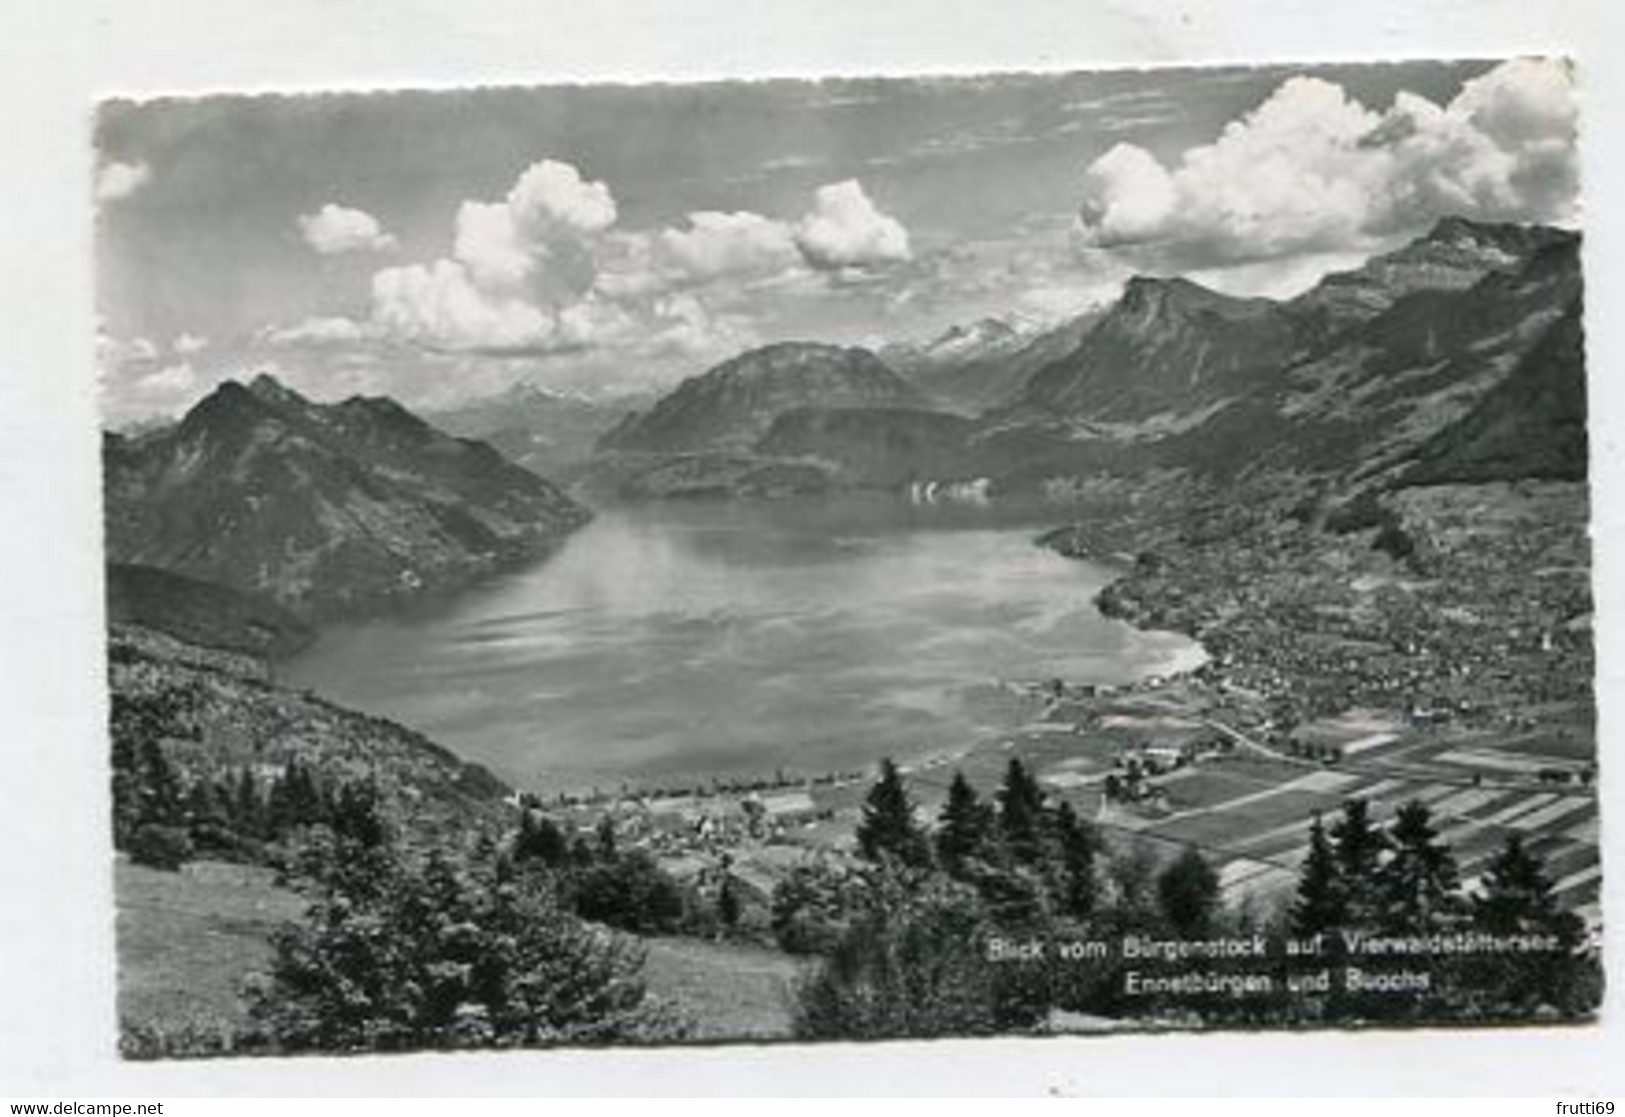 AK 082924 SWITZERLAND - Blick Vom Bürgenstock Auf Vierwaldstättersee Ennetbürgen Und Buochs - Buochs